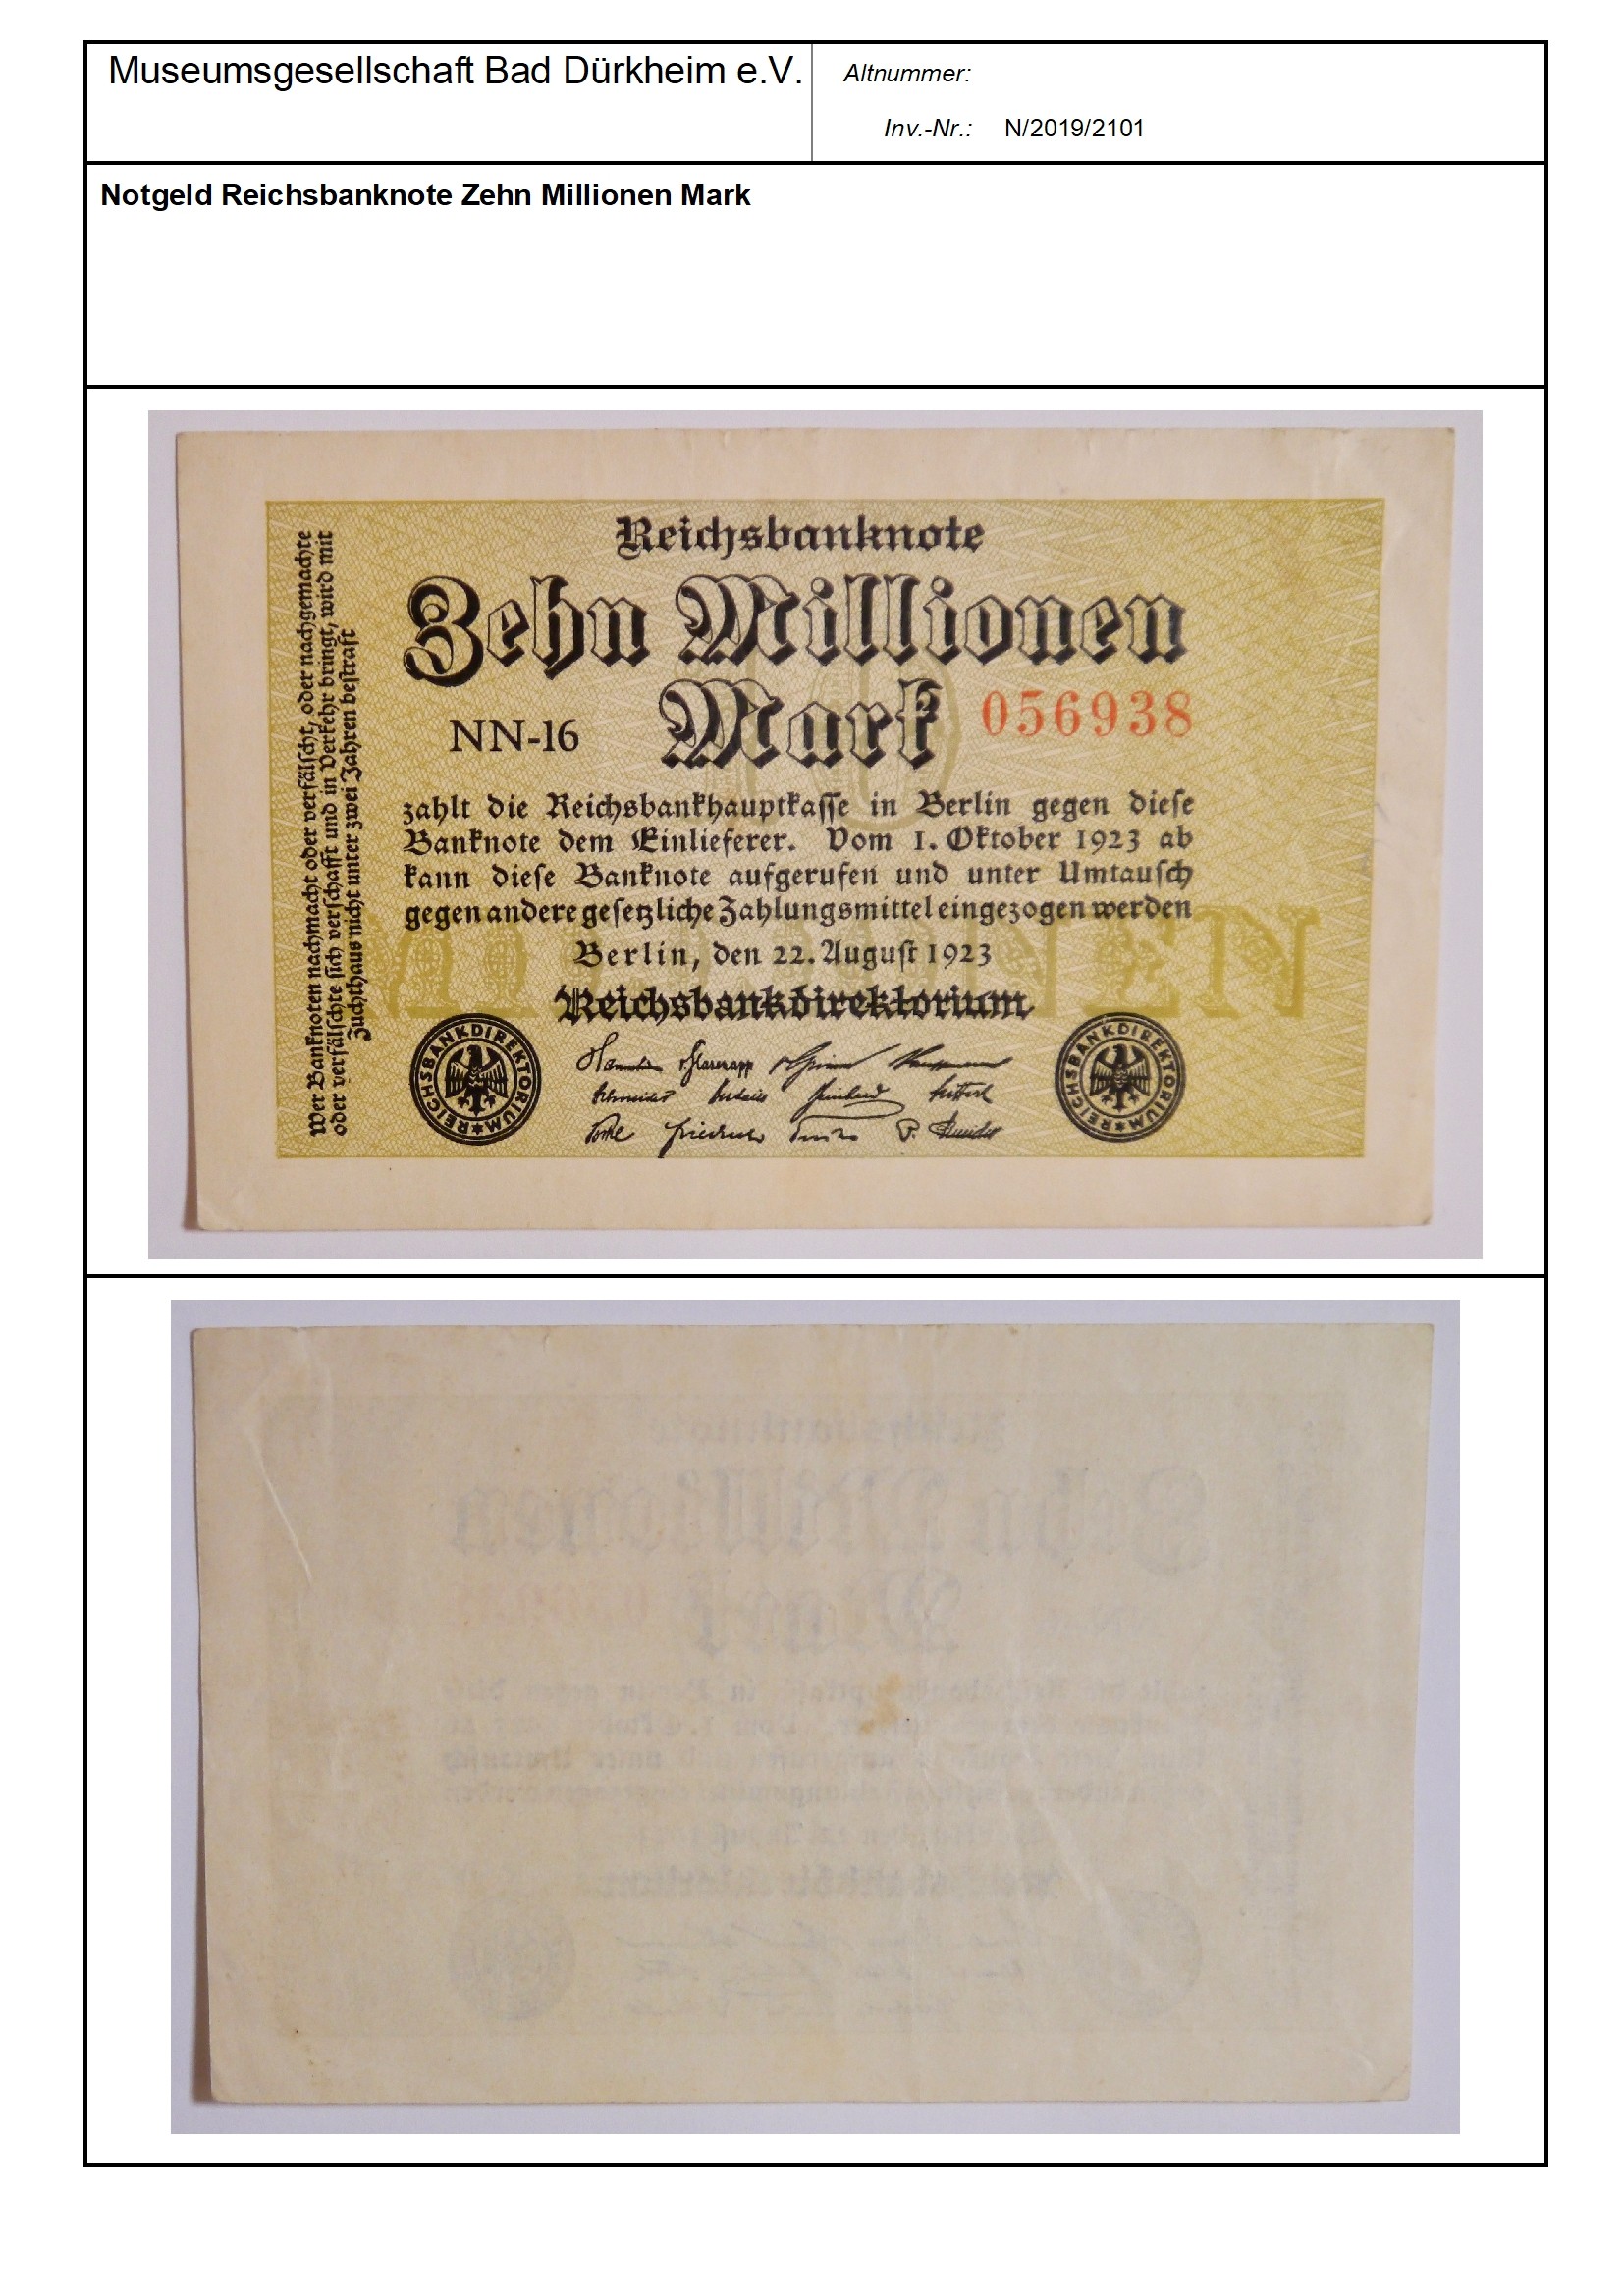 Notgeld Reichsbanknote Zehn Millionen Mark
Serien-Nummer: NN-16 056938 (Museumsgesellschaft Bad Dürkheim e.V. CC BY-NC-SA)